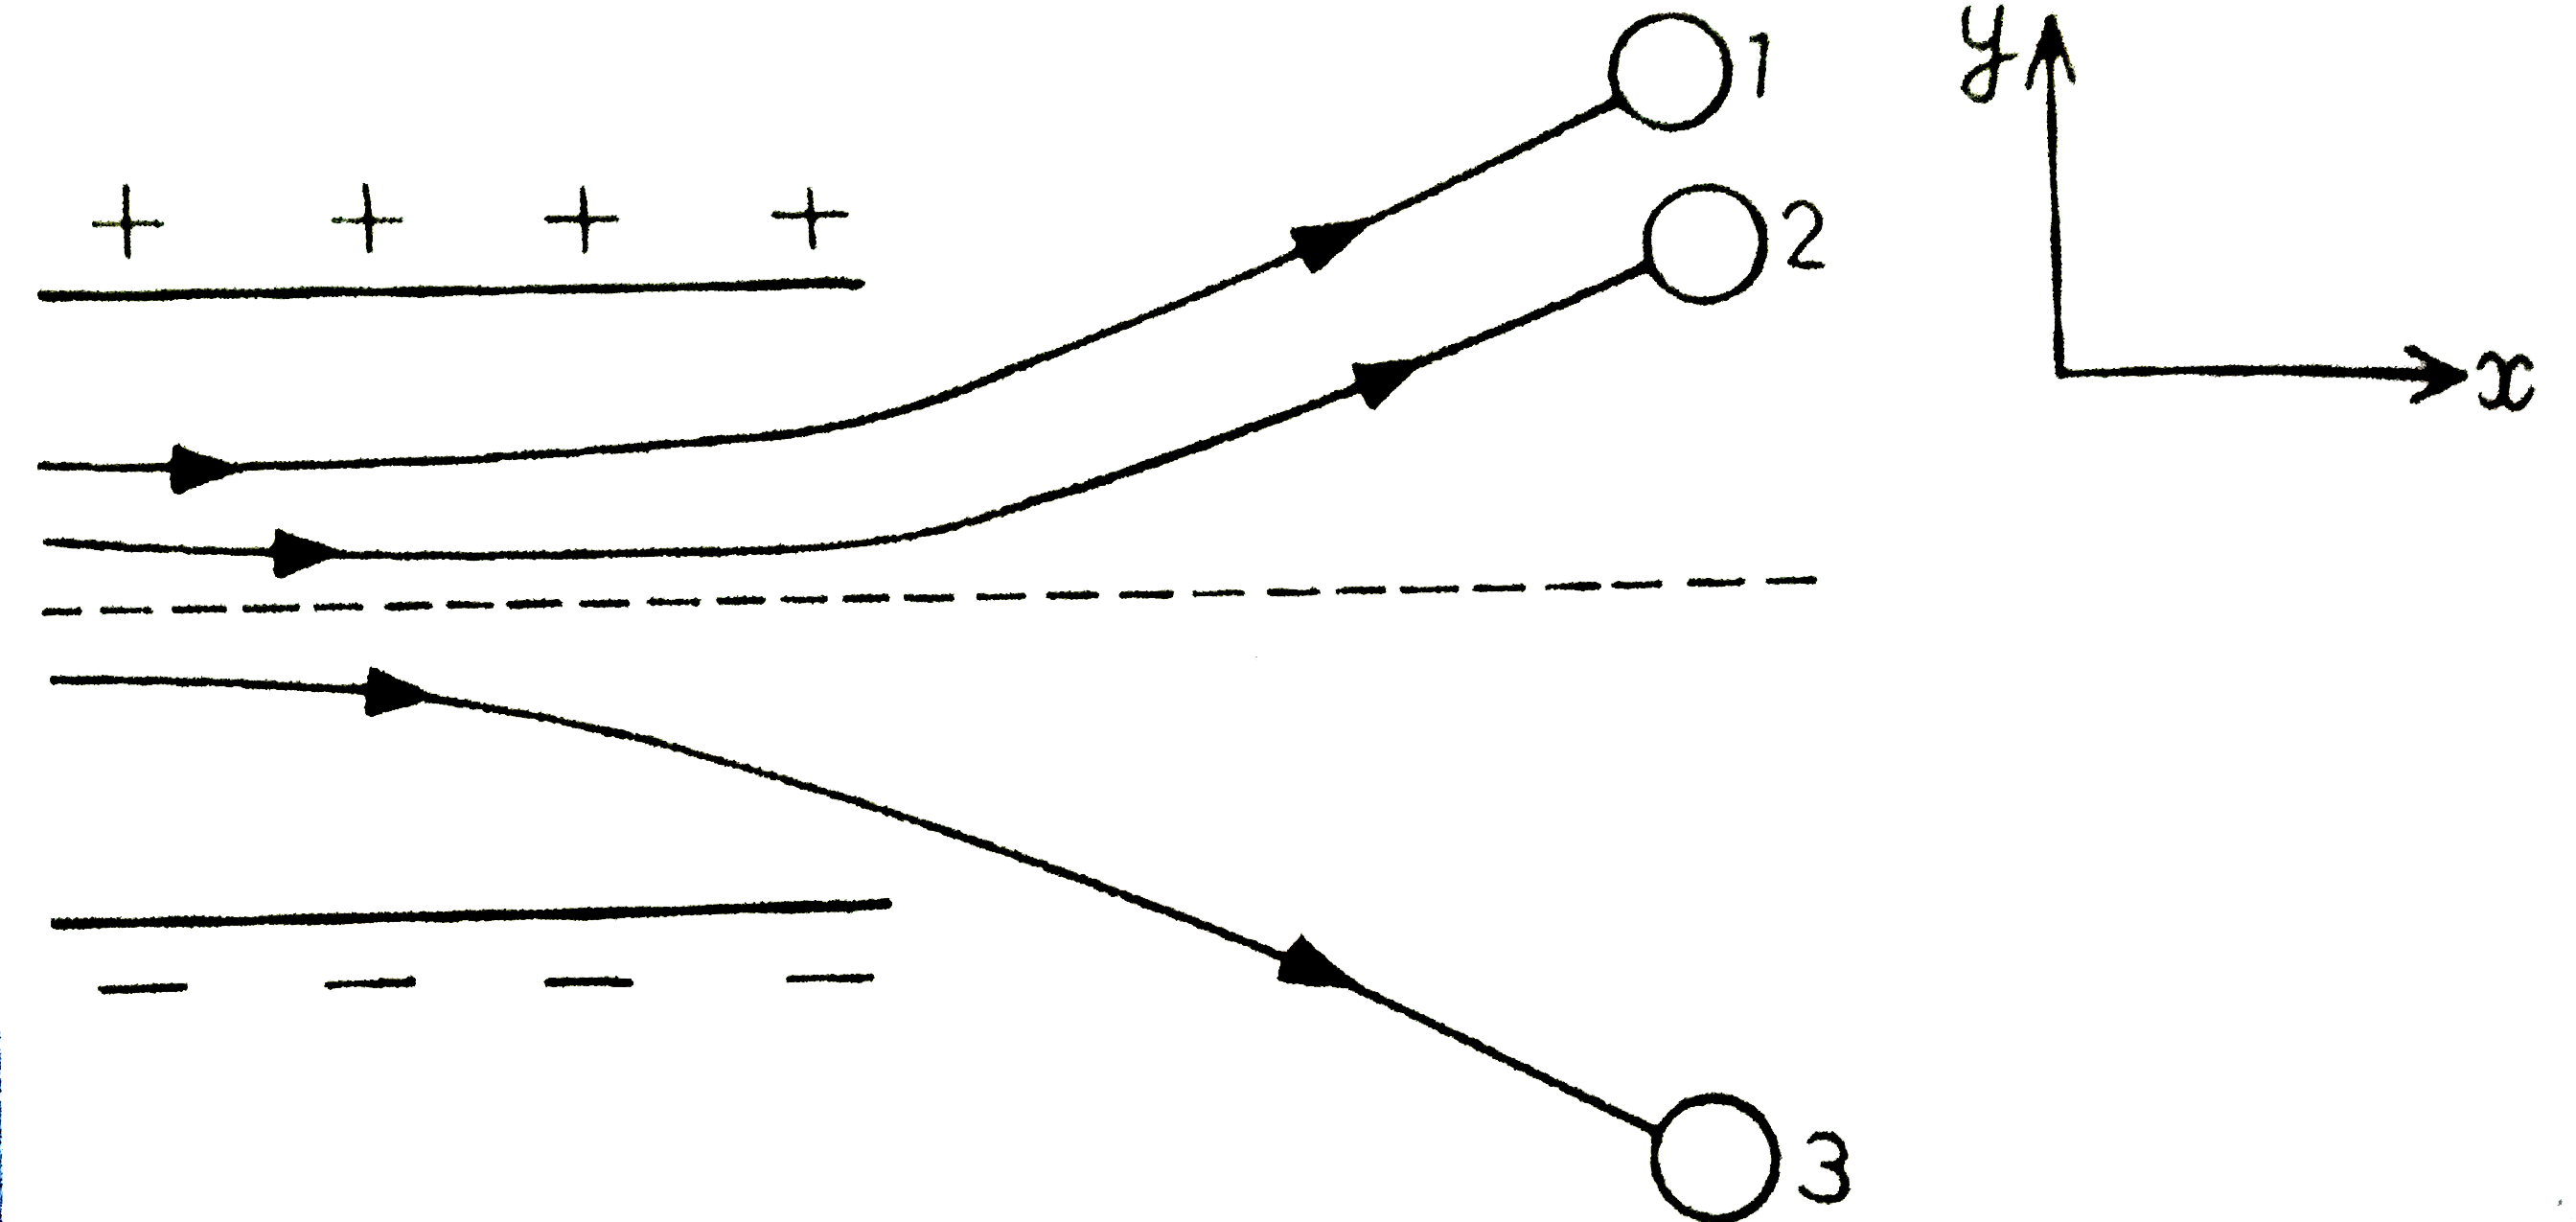 चित्र  में कसी एक्शमन स्थिर वैधुता छेत्र में तीन आवेशित करने के पाथचीन (track) दर्शाये गए है तीनो आवेशों के छीन लिखिए इनमे से किस कद का आवेश शानहित अनुपात (q//m)  अधिकतम है